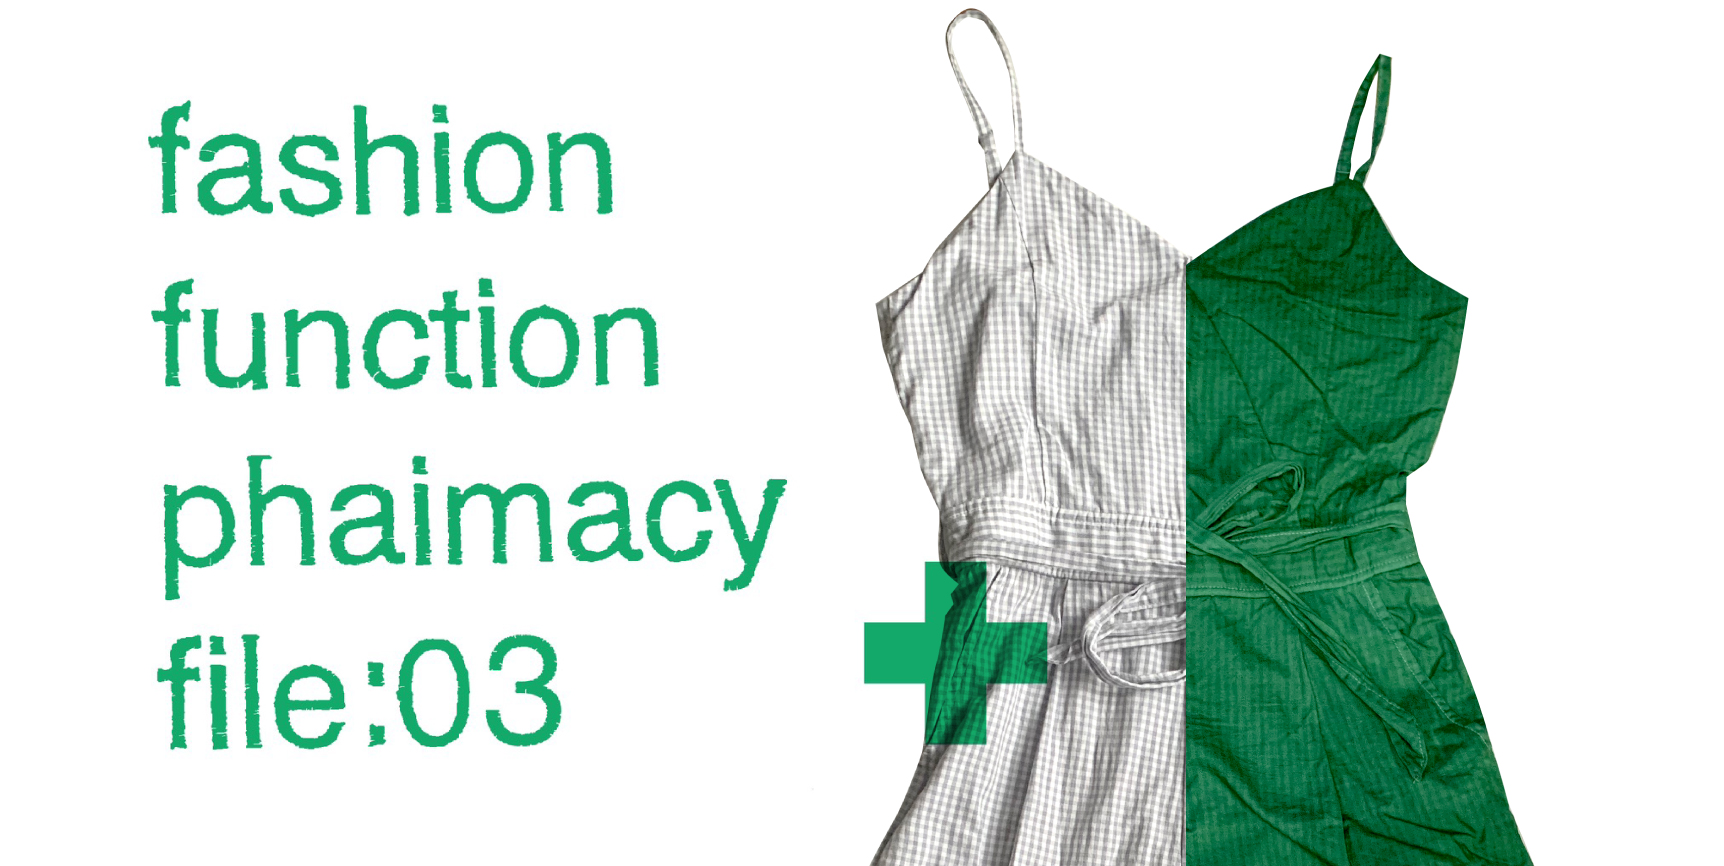 【お知らせ】fashion function pharmacy file:03開催のお知らせ